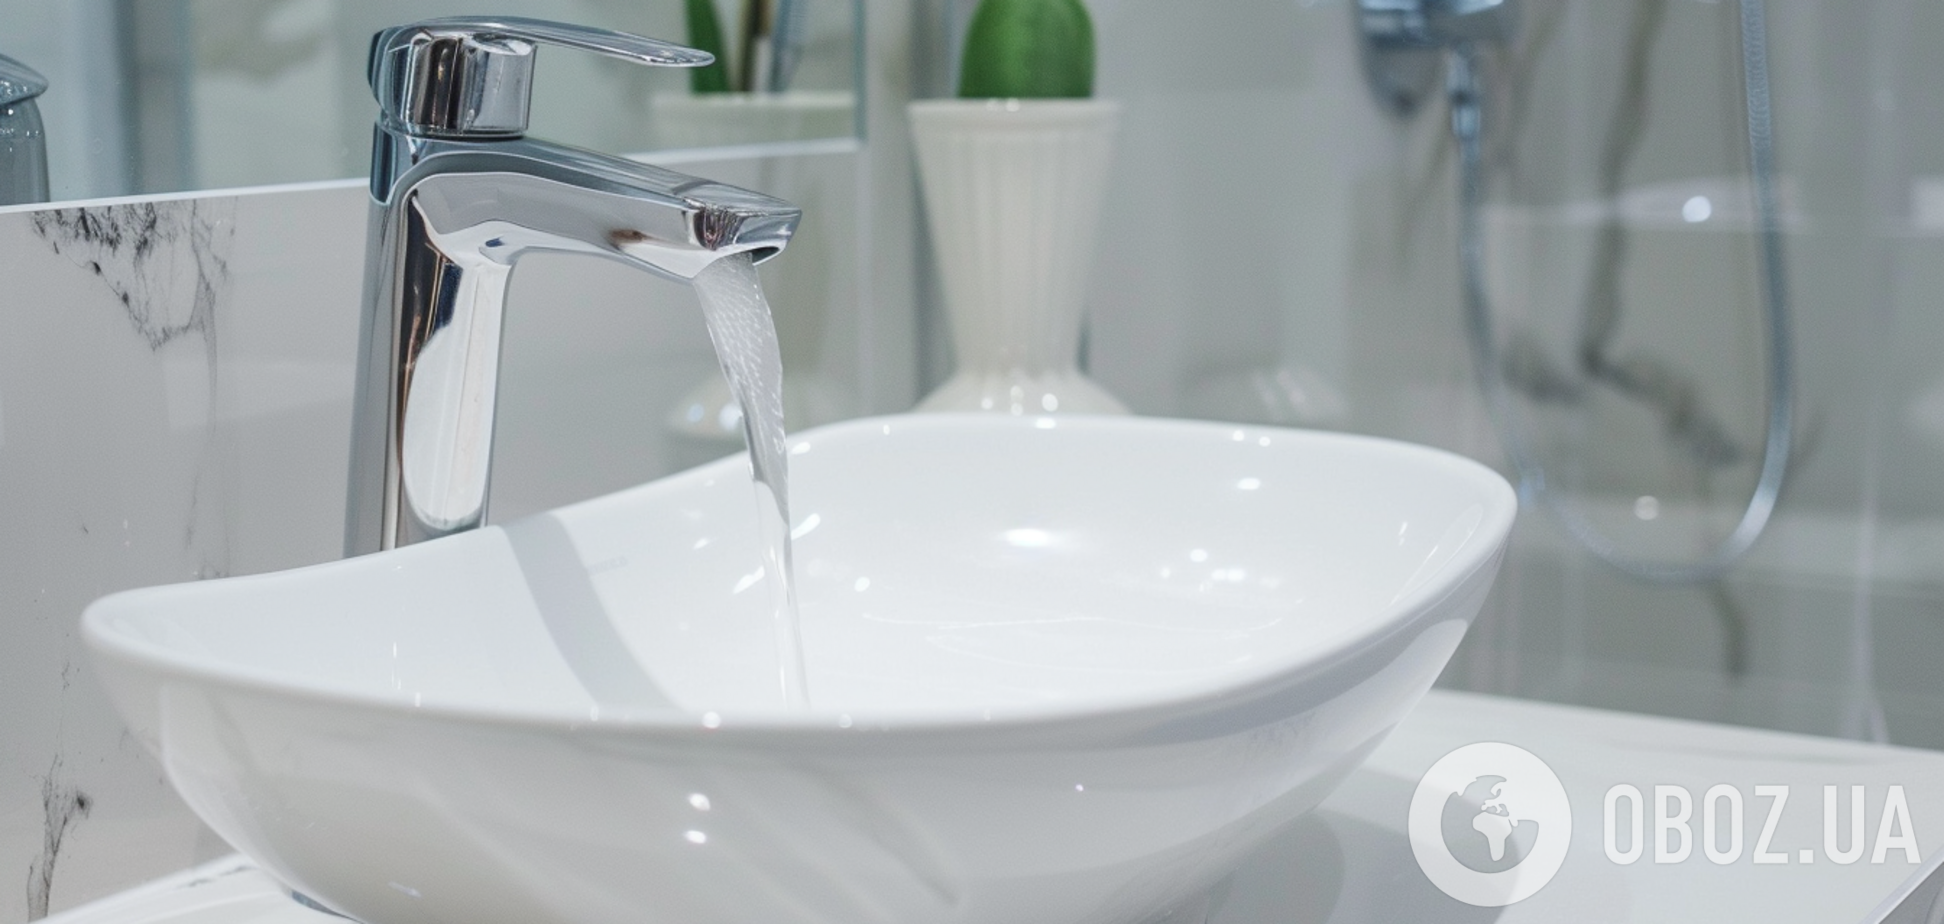 Действенное средство поможет отчистить сантехнику в ванной до блеска: лайфхак